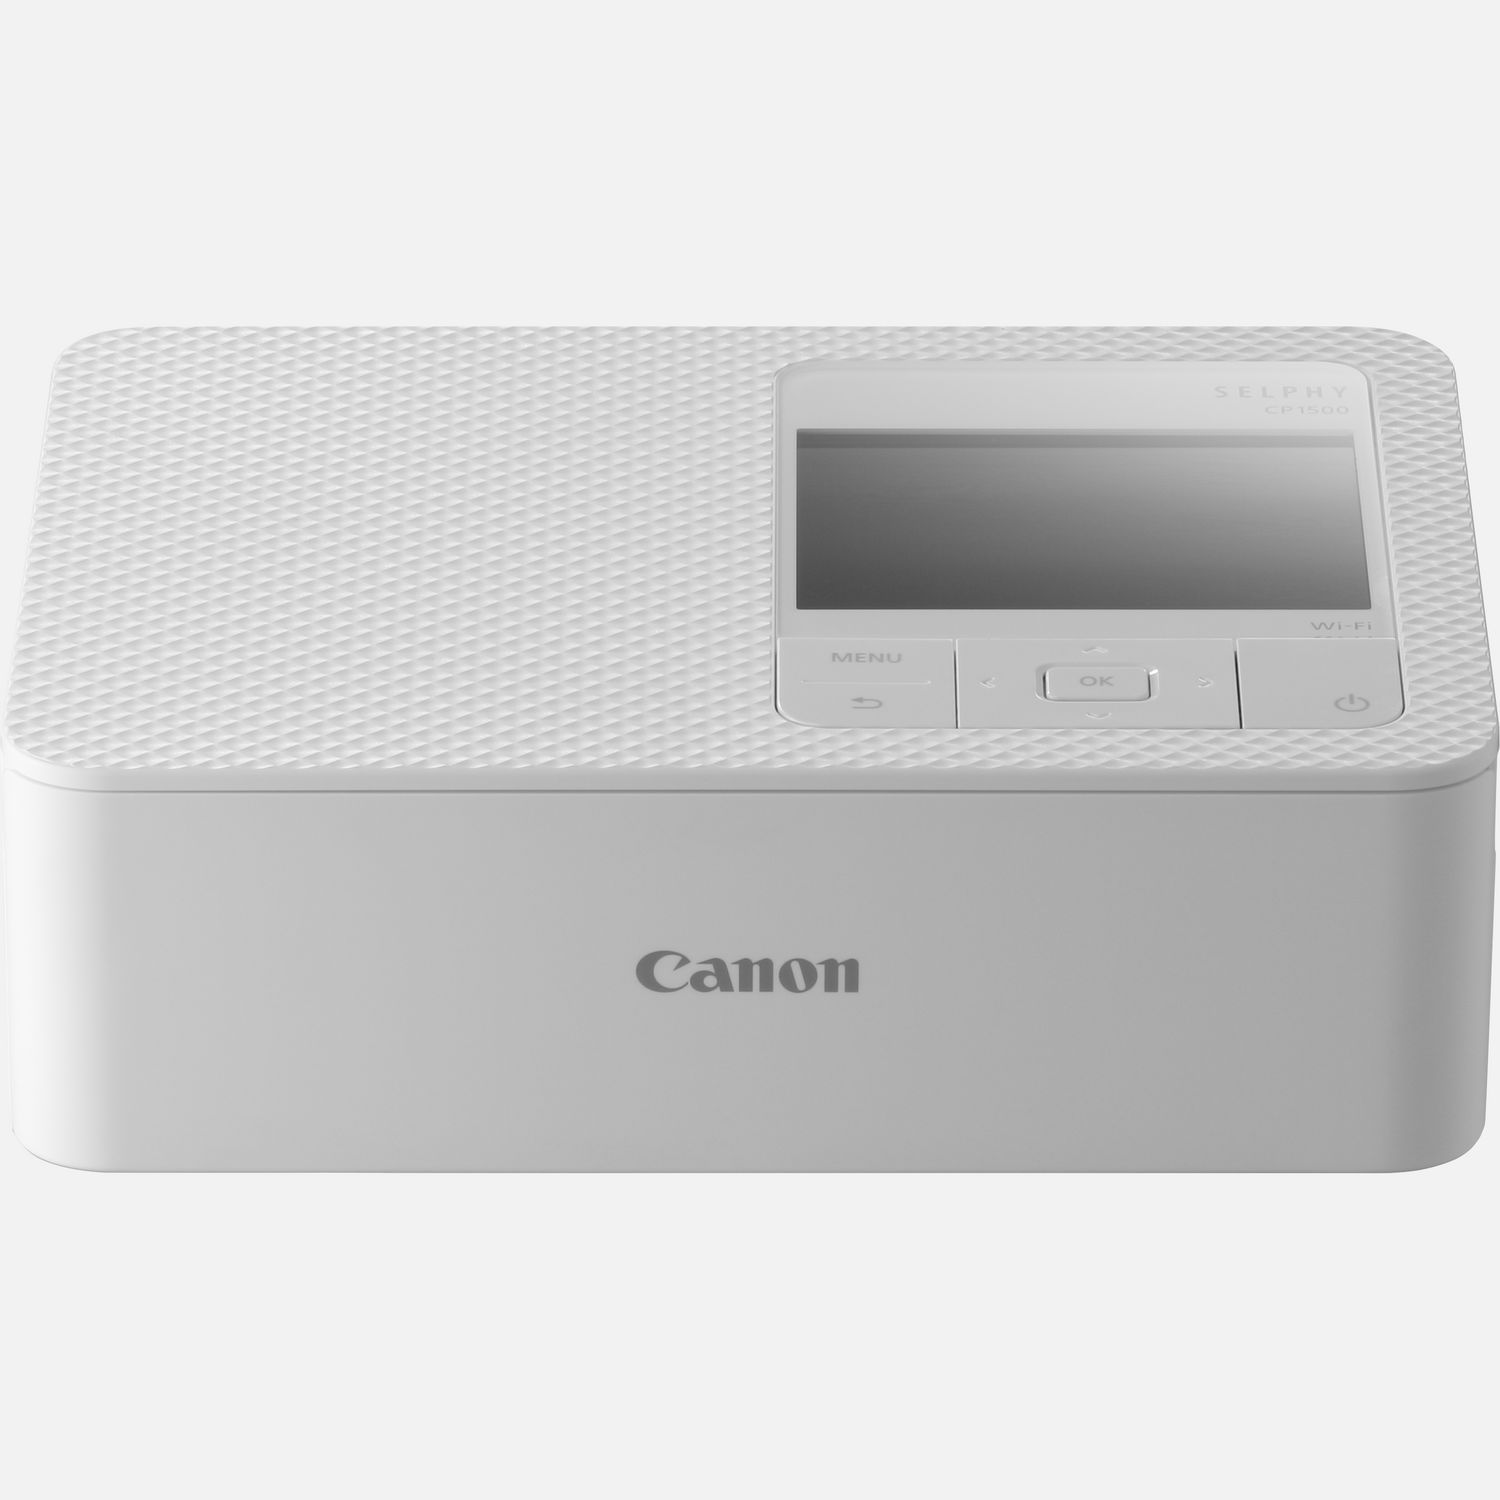 Stampante fotografica portatile Canon SELPHY CP1500 a colori - bianco